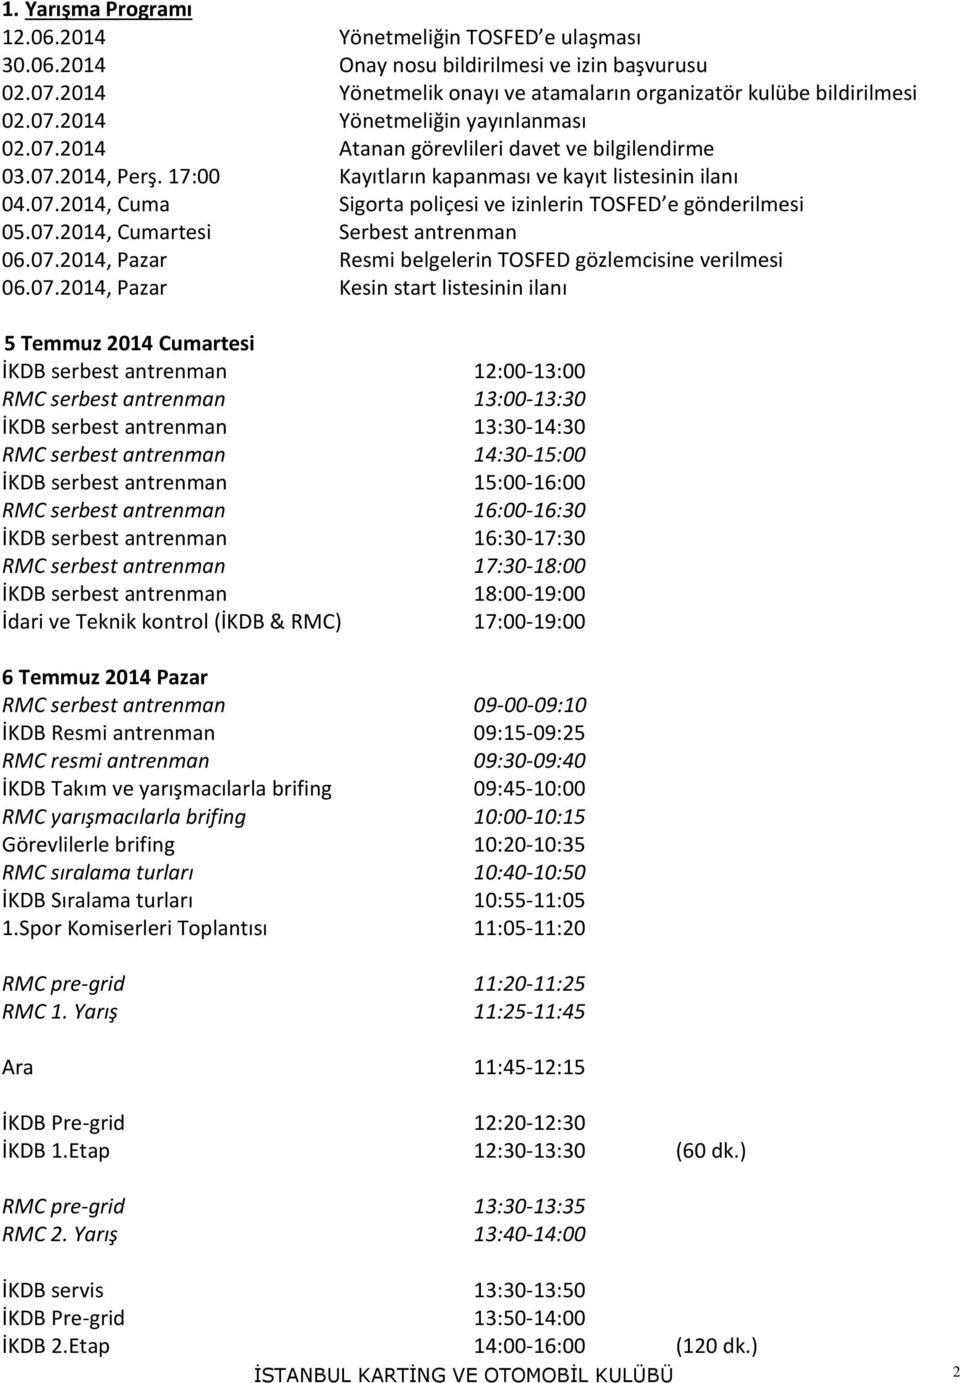 07.2014, Pazar Resmi belgelerin TOSFED gözlemcisine verilmesi 06.07.2014, Pazar Kesin start listesinin ilanı 5 Temmuz 2014 Cumartesi İKDB serbest antrenman 12:00-13:00 RMC serbest antrenman